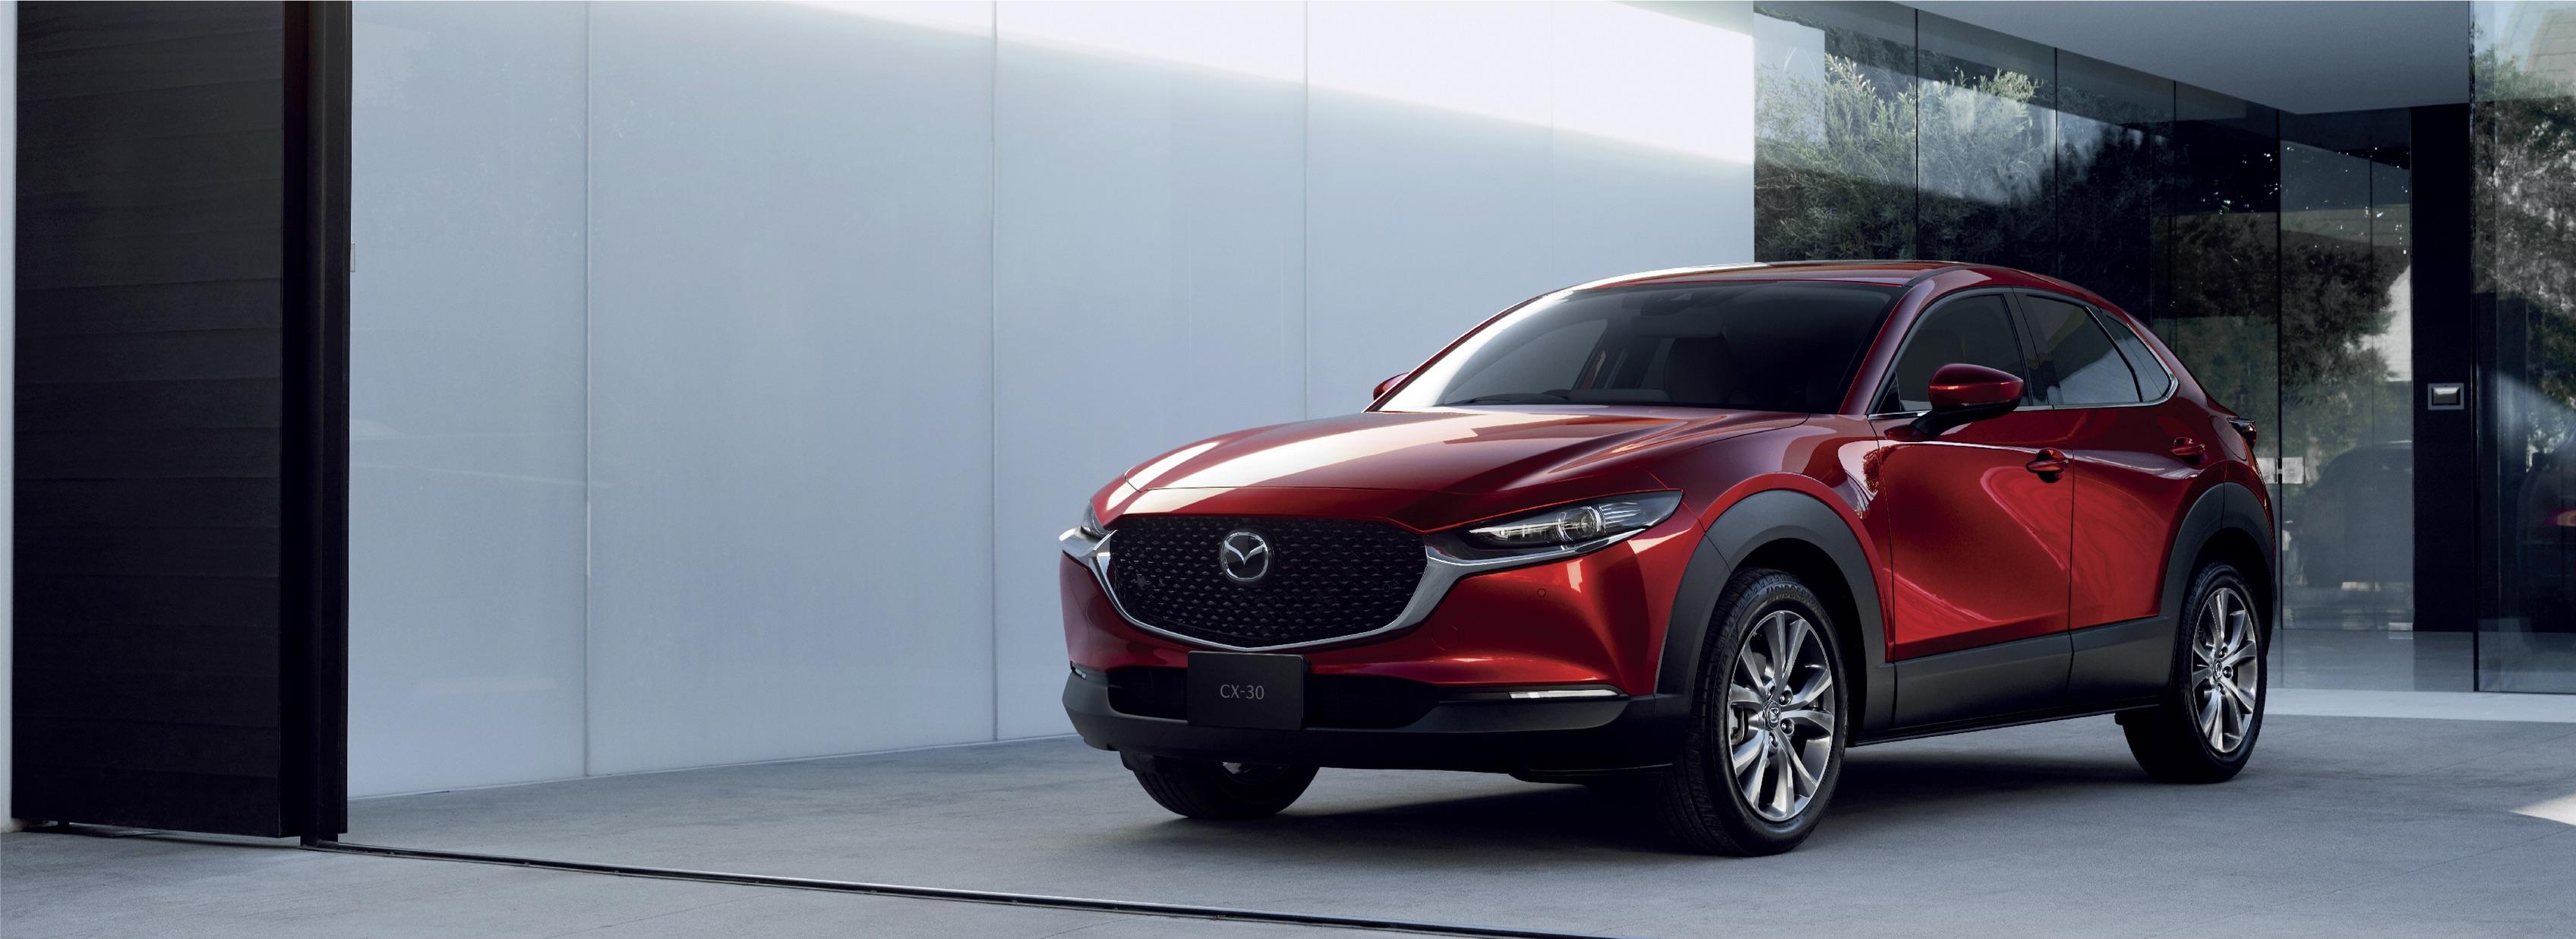 มาแล้ว! All-new Mazda CX-30 2020 พร้อมราคาทุกรุ่นย่อยที่เริ่มต้นไม่ถึงล้าน